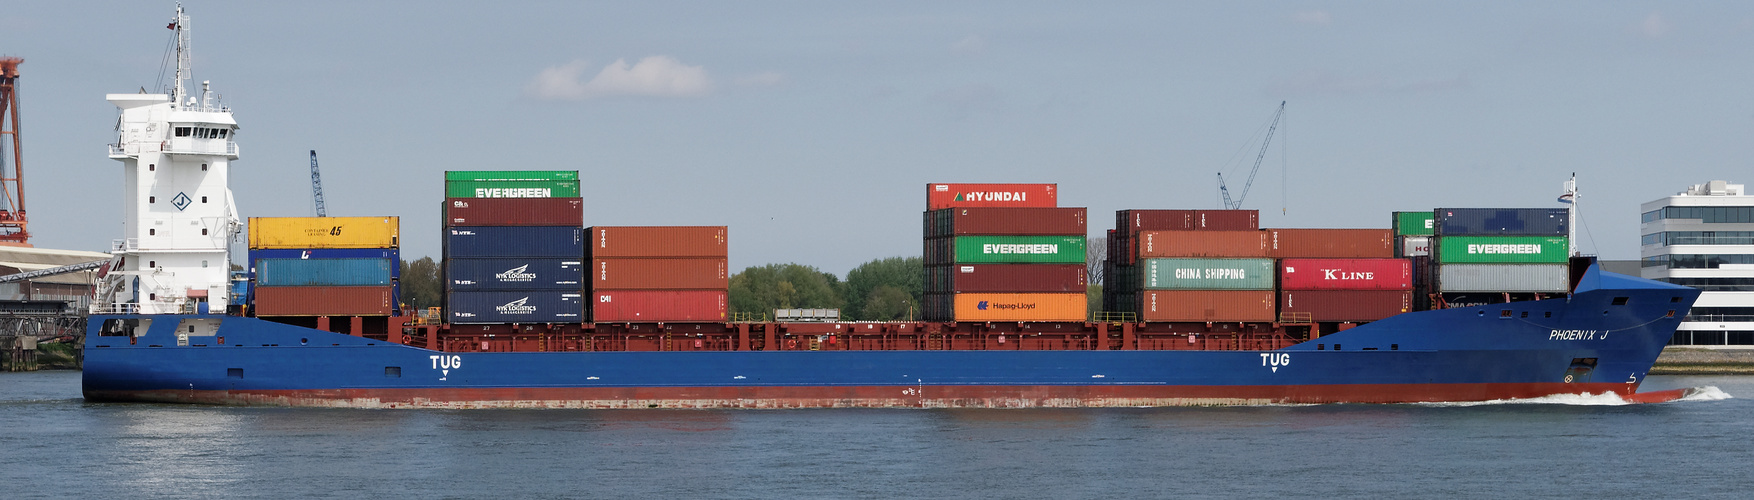 Schiffsverkehr in Rotterdam (1)